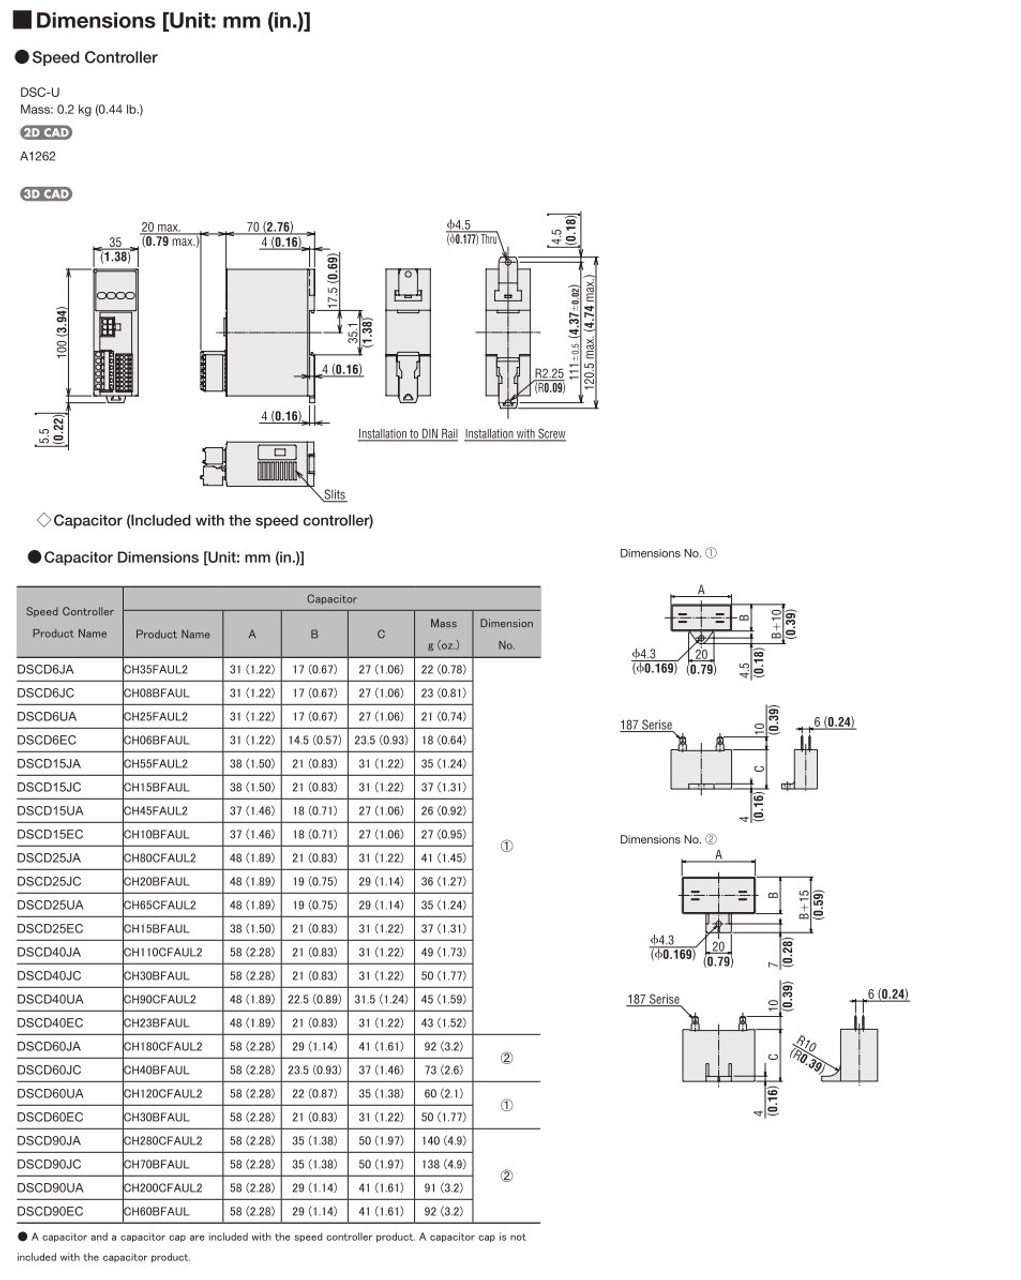 SCM315EC-90A / DSCD15EC - Dimensions